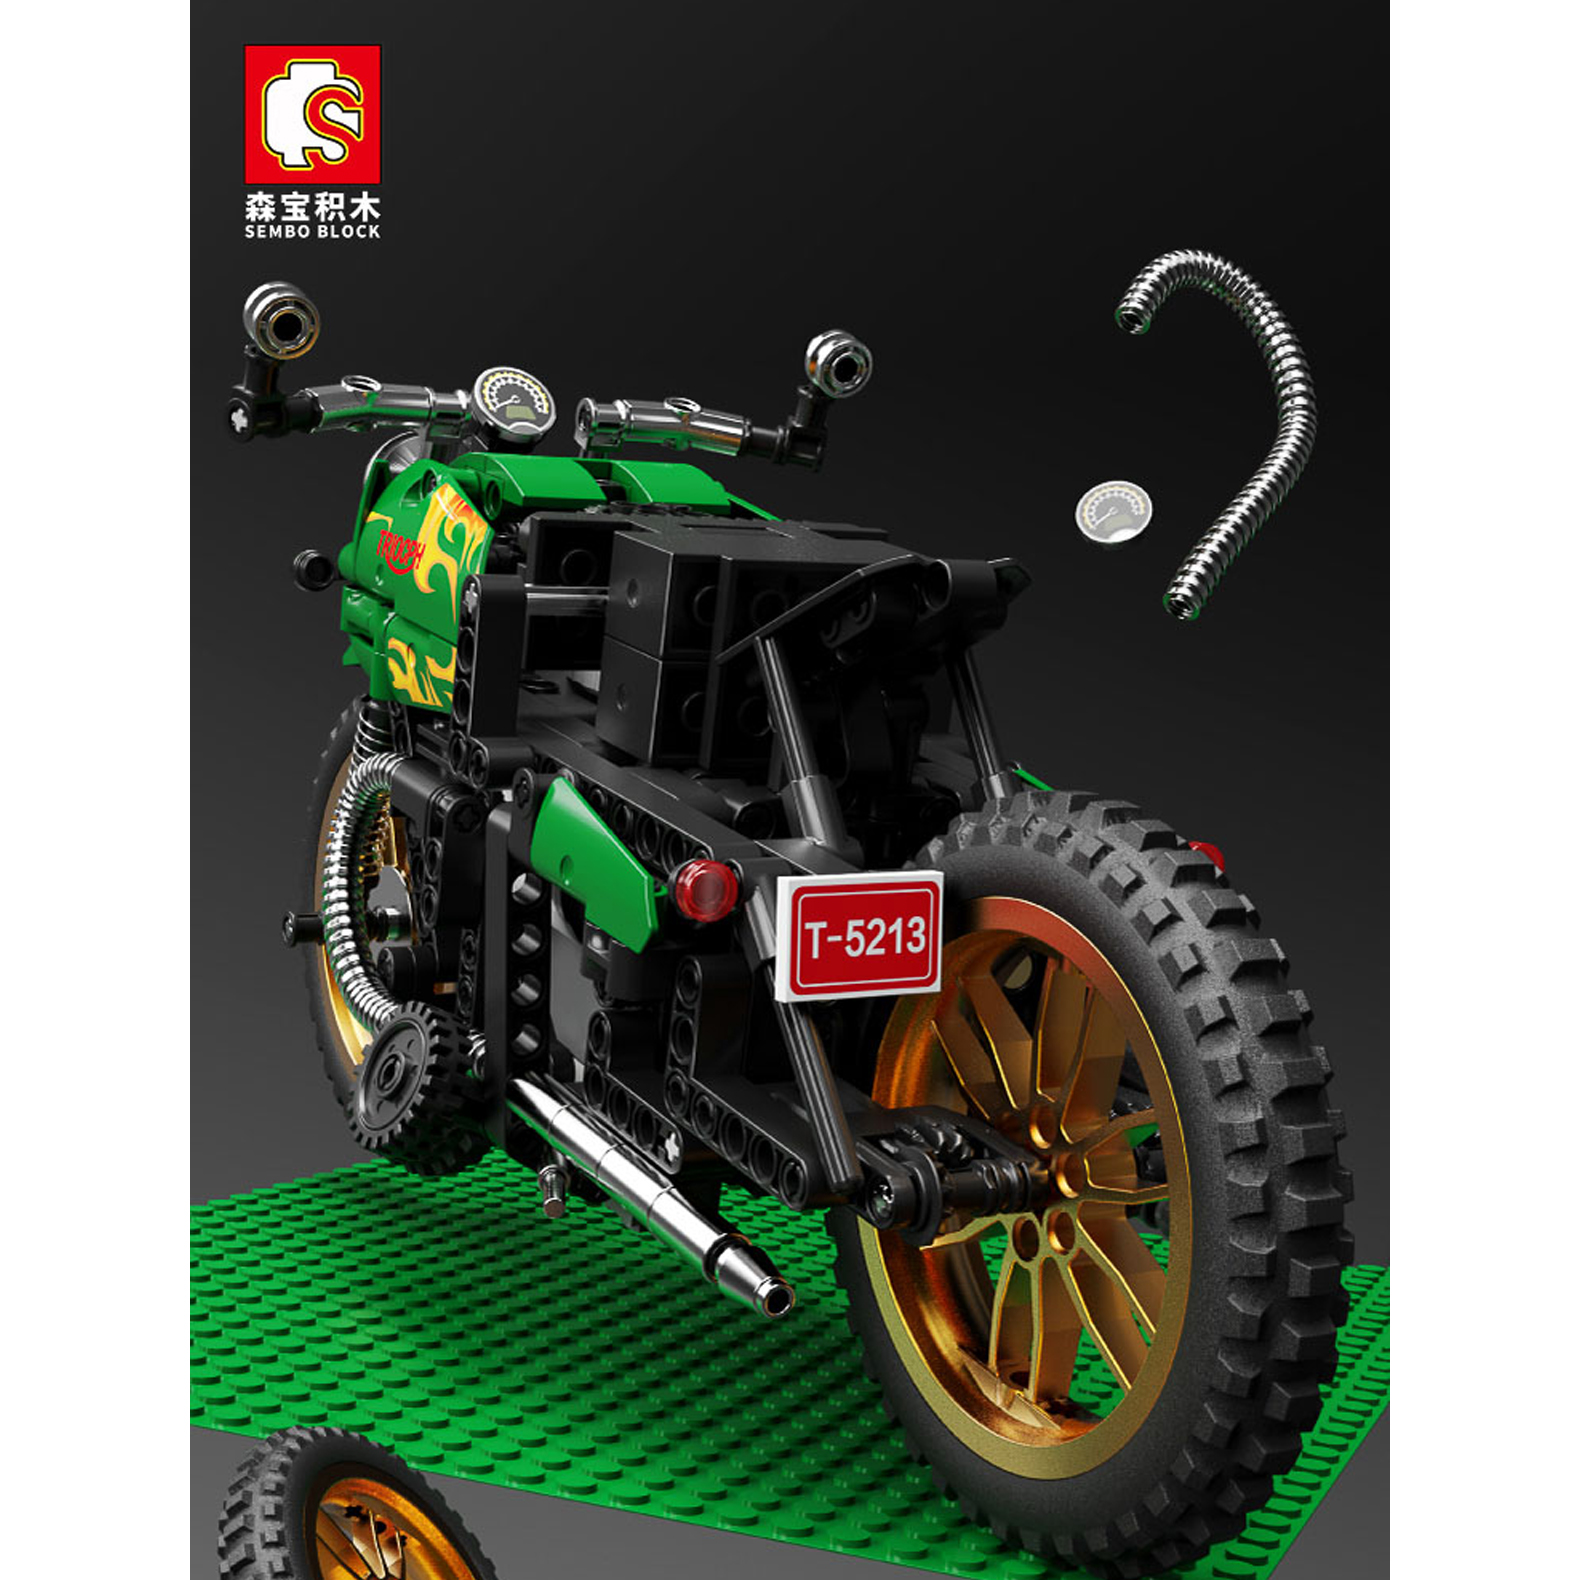 Конструктор Sembo Block спортивный мотоцикл 701010 - фото 7